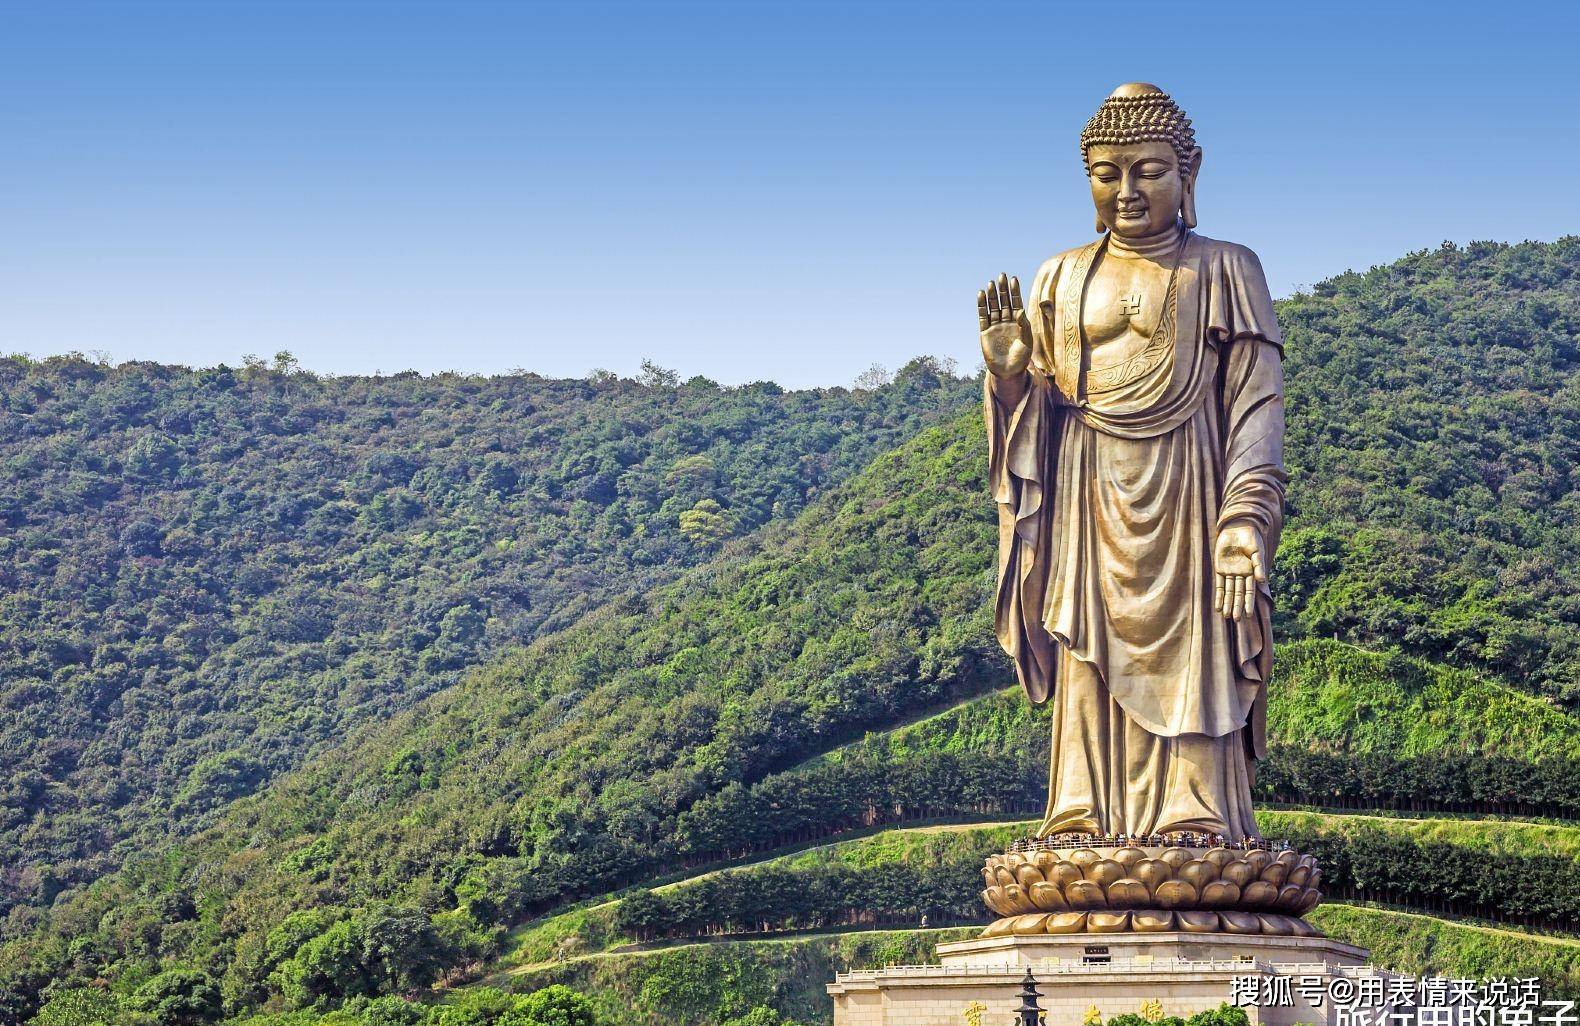 原创世界最大"释迦牟尼佛像",景区庄严肃穆,藏有5大玄机